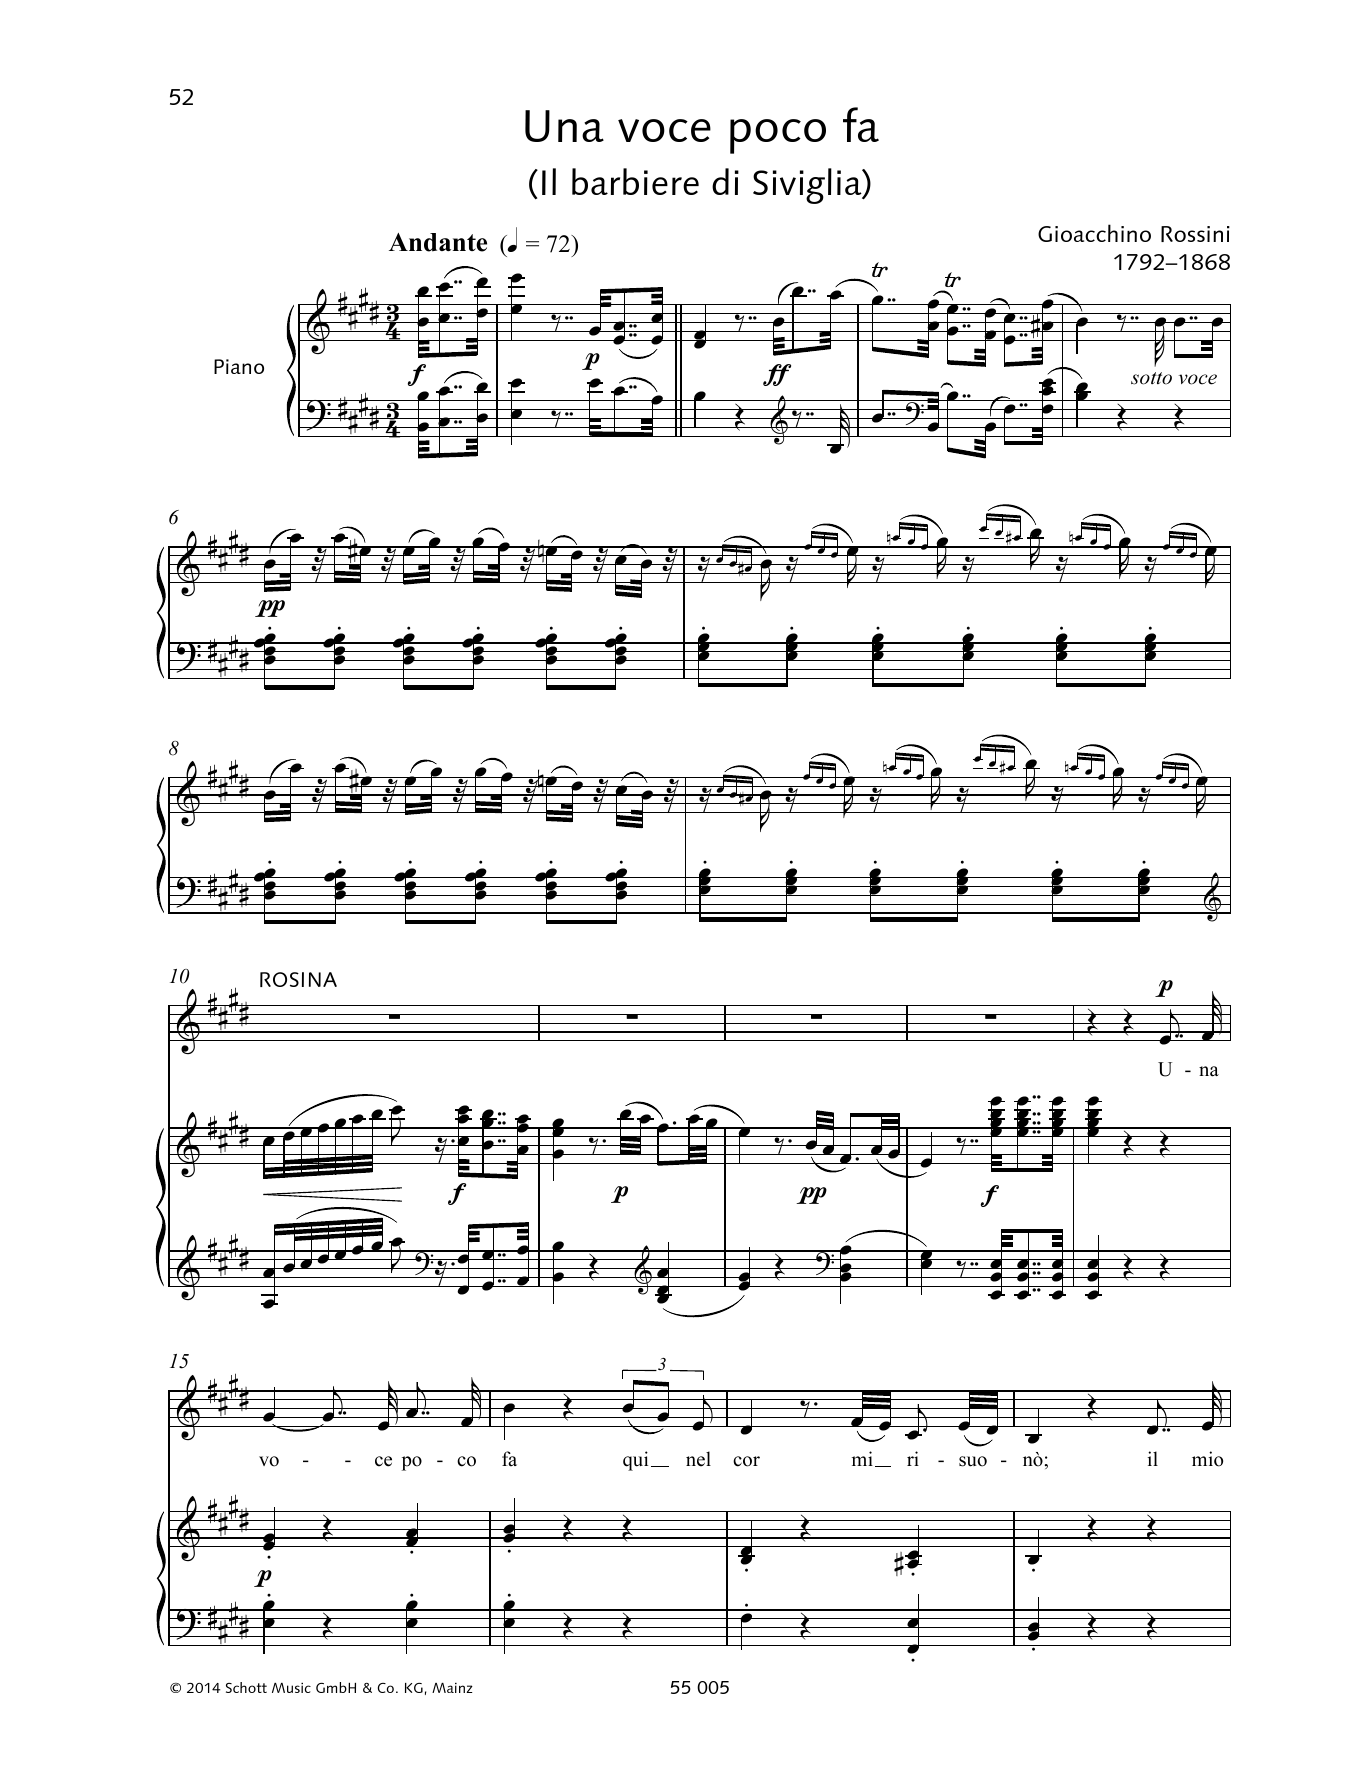 Gioacchino Rossini Una voce poco fa Sheet Music Notes & Chords for Piano & Vocal - Download or Print PDF